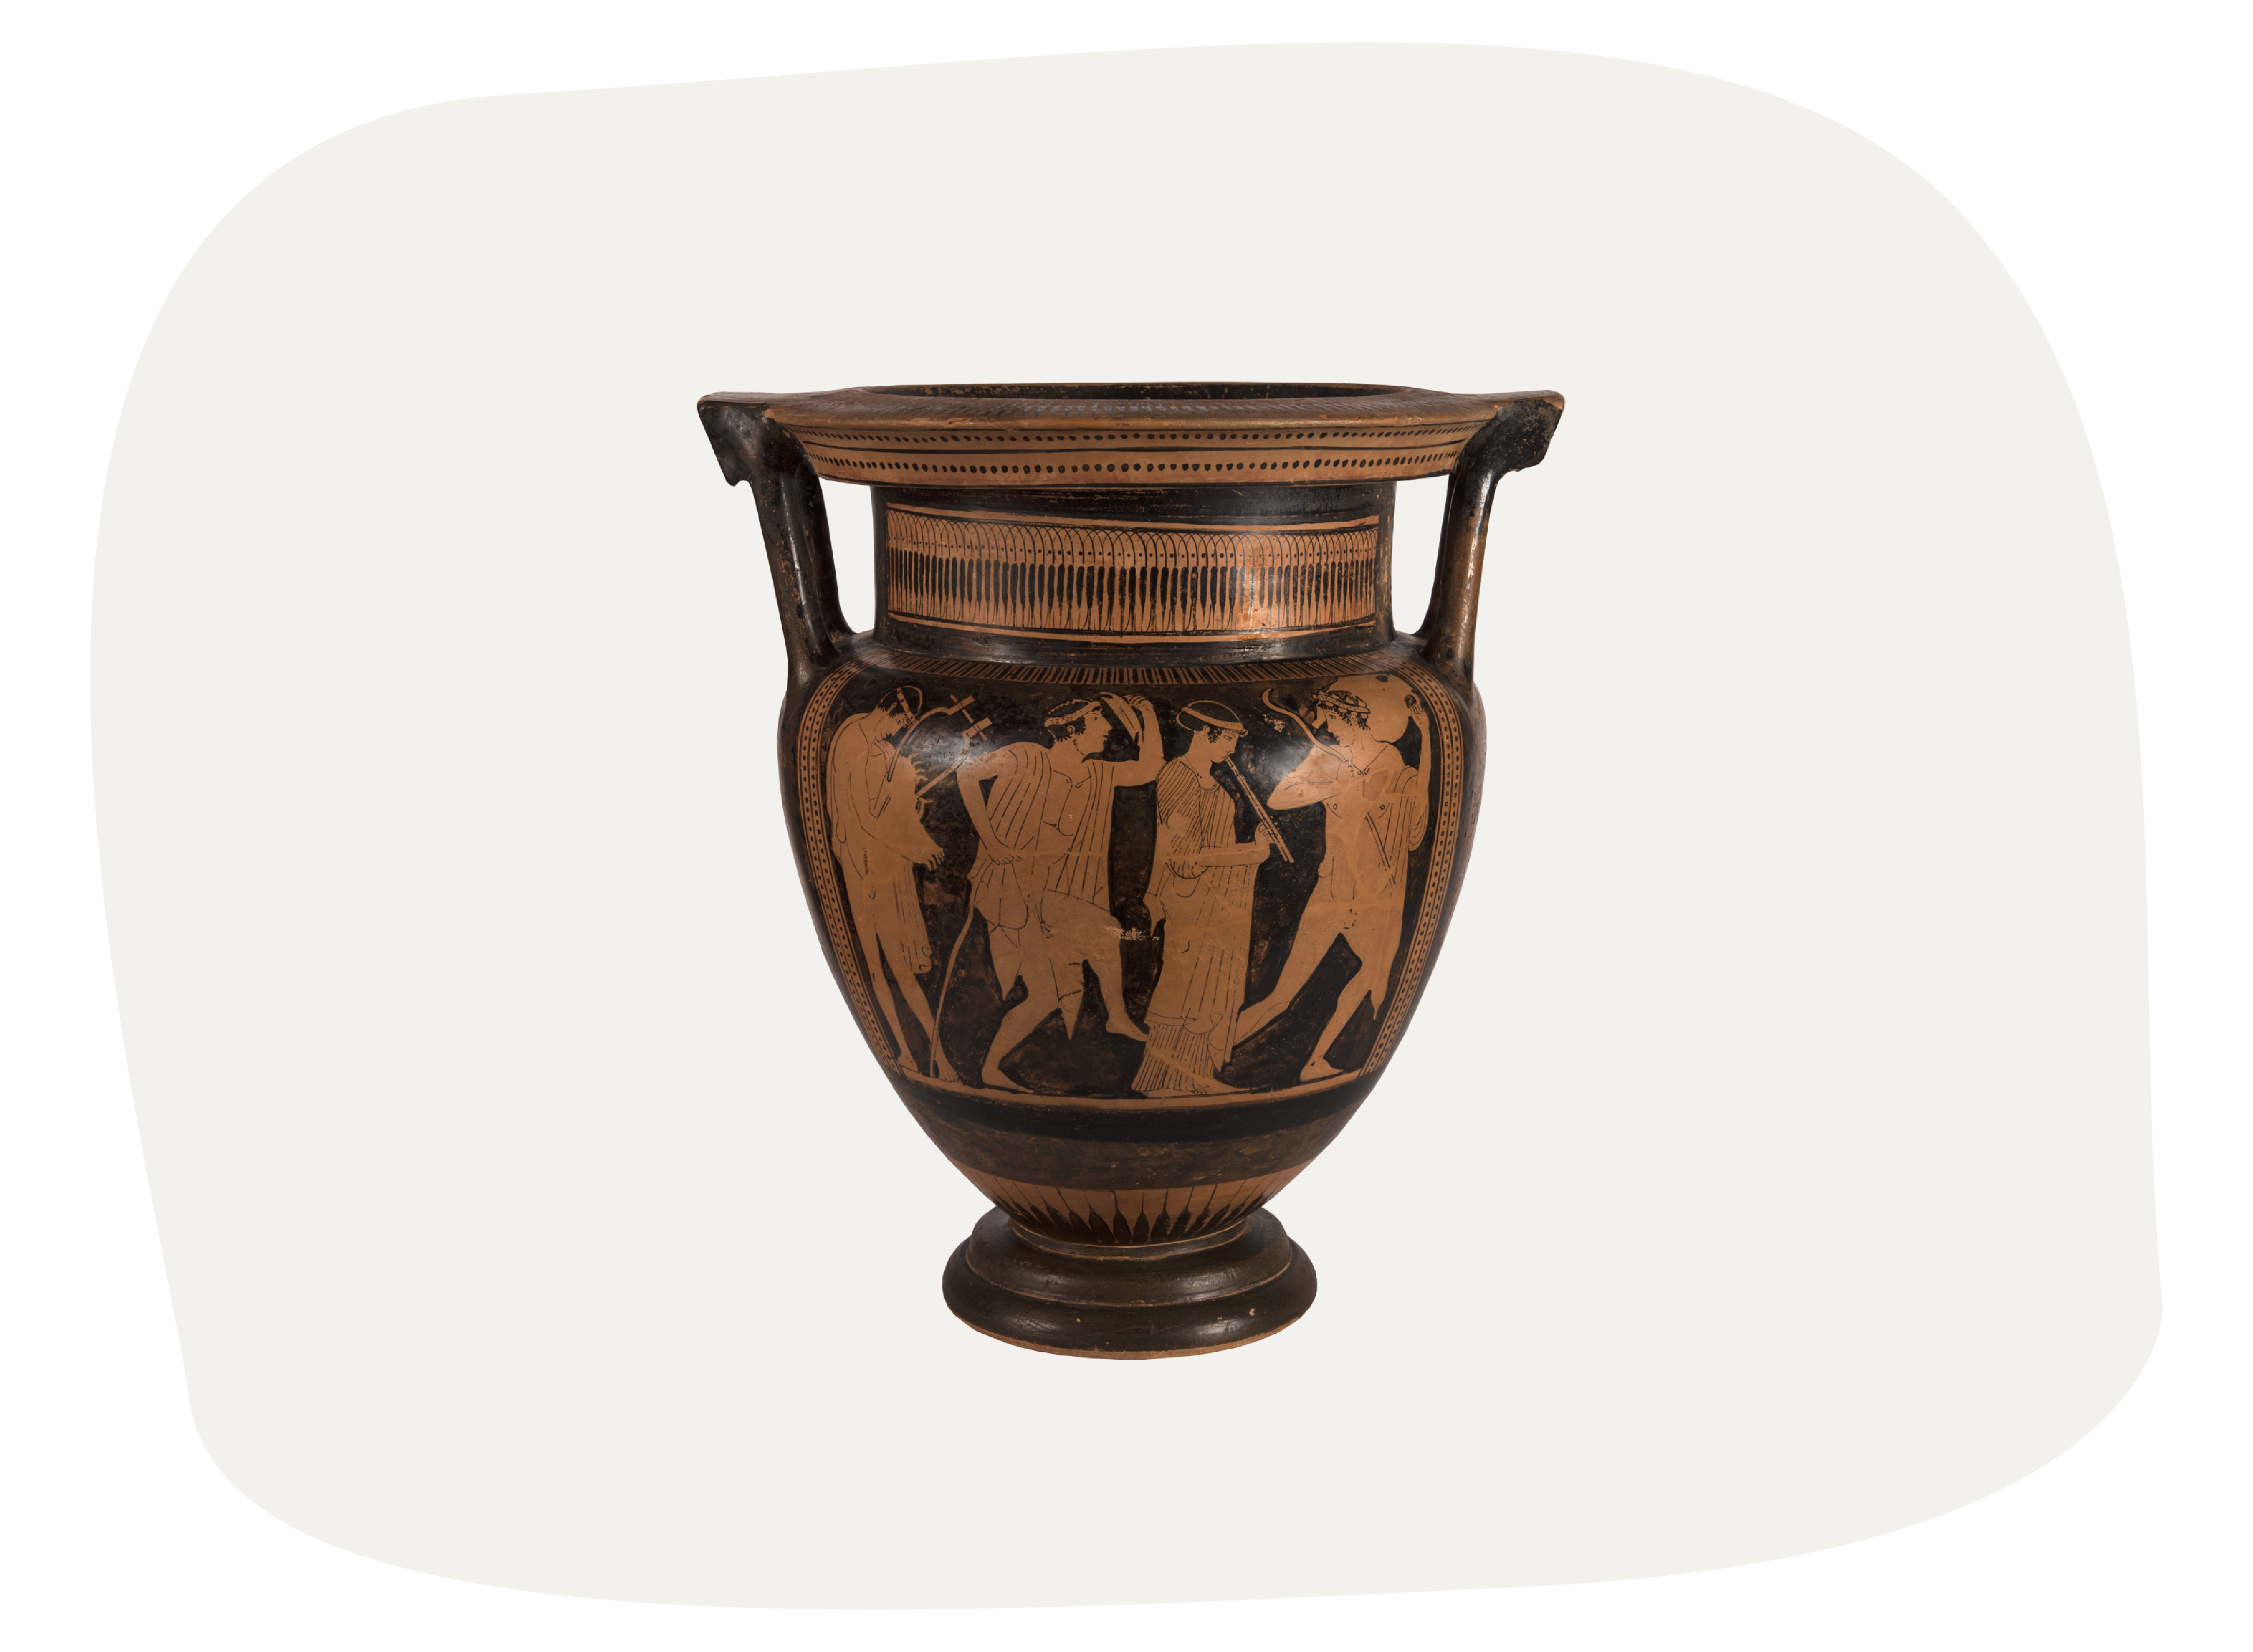 Conversation about an ancient vase